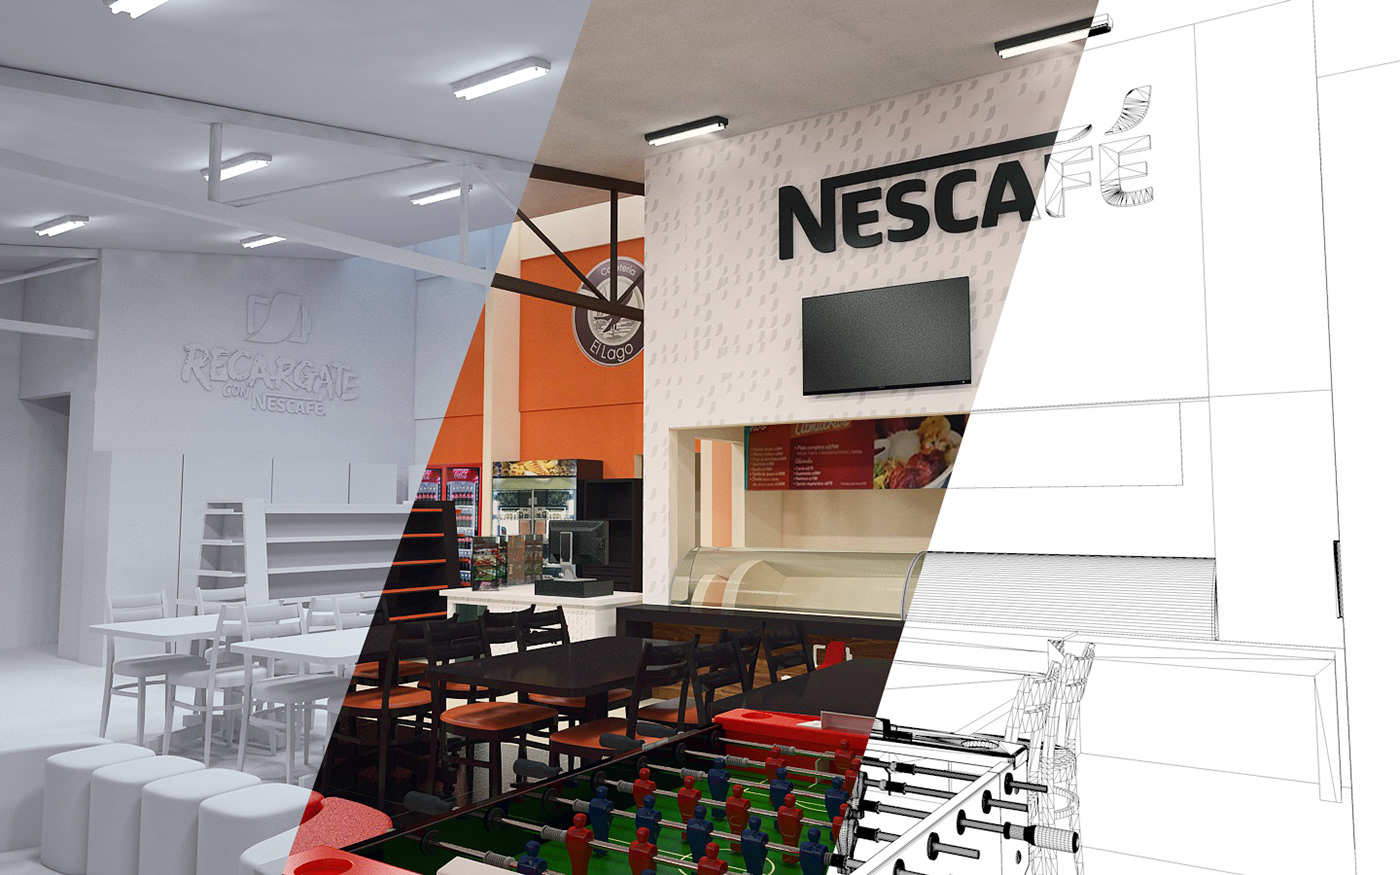 coffe nescafe ambientacion diseño Interior arquitectura Cinema cafe